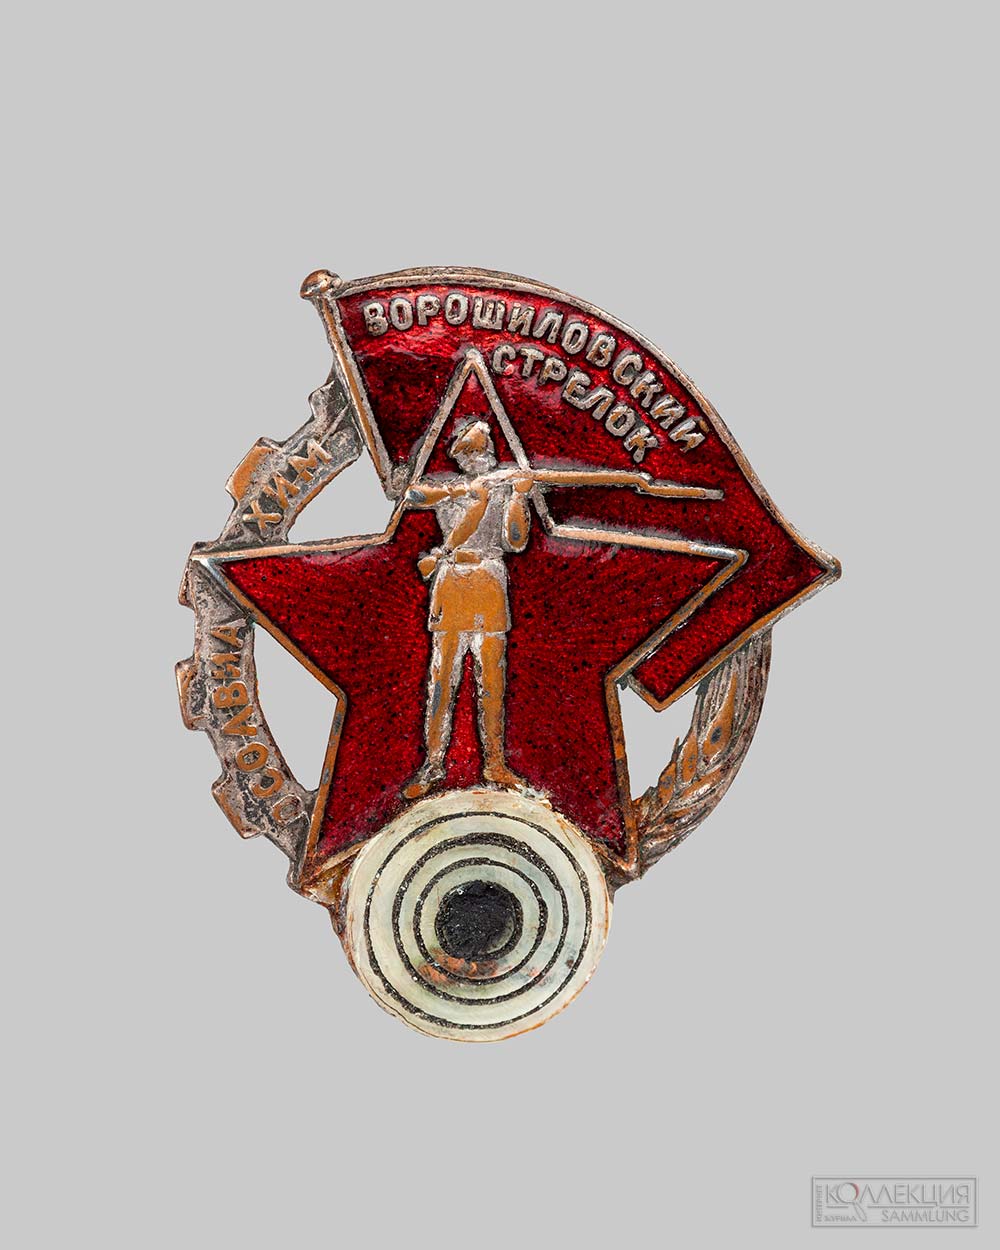 Нагрудный знак «Ворошиловский стрелок» Осоавиахим № 45277. 1930-е гг. Исторический музей, Москва